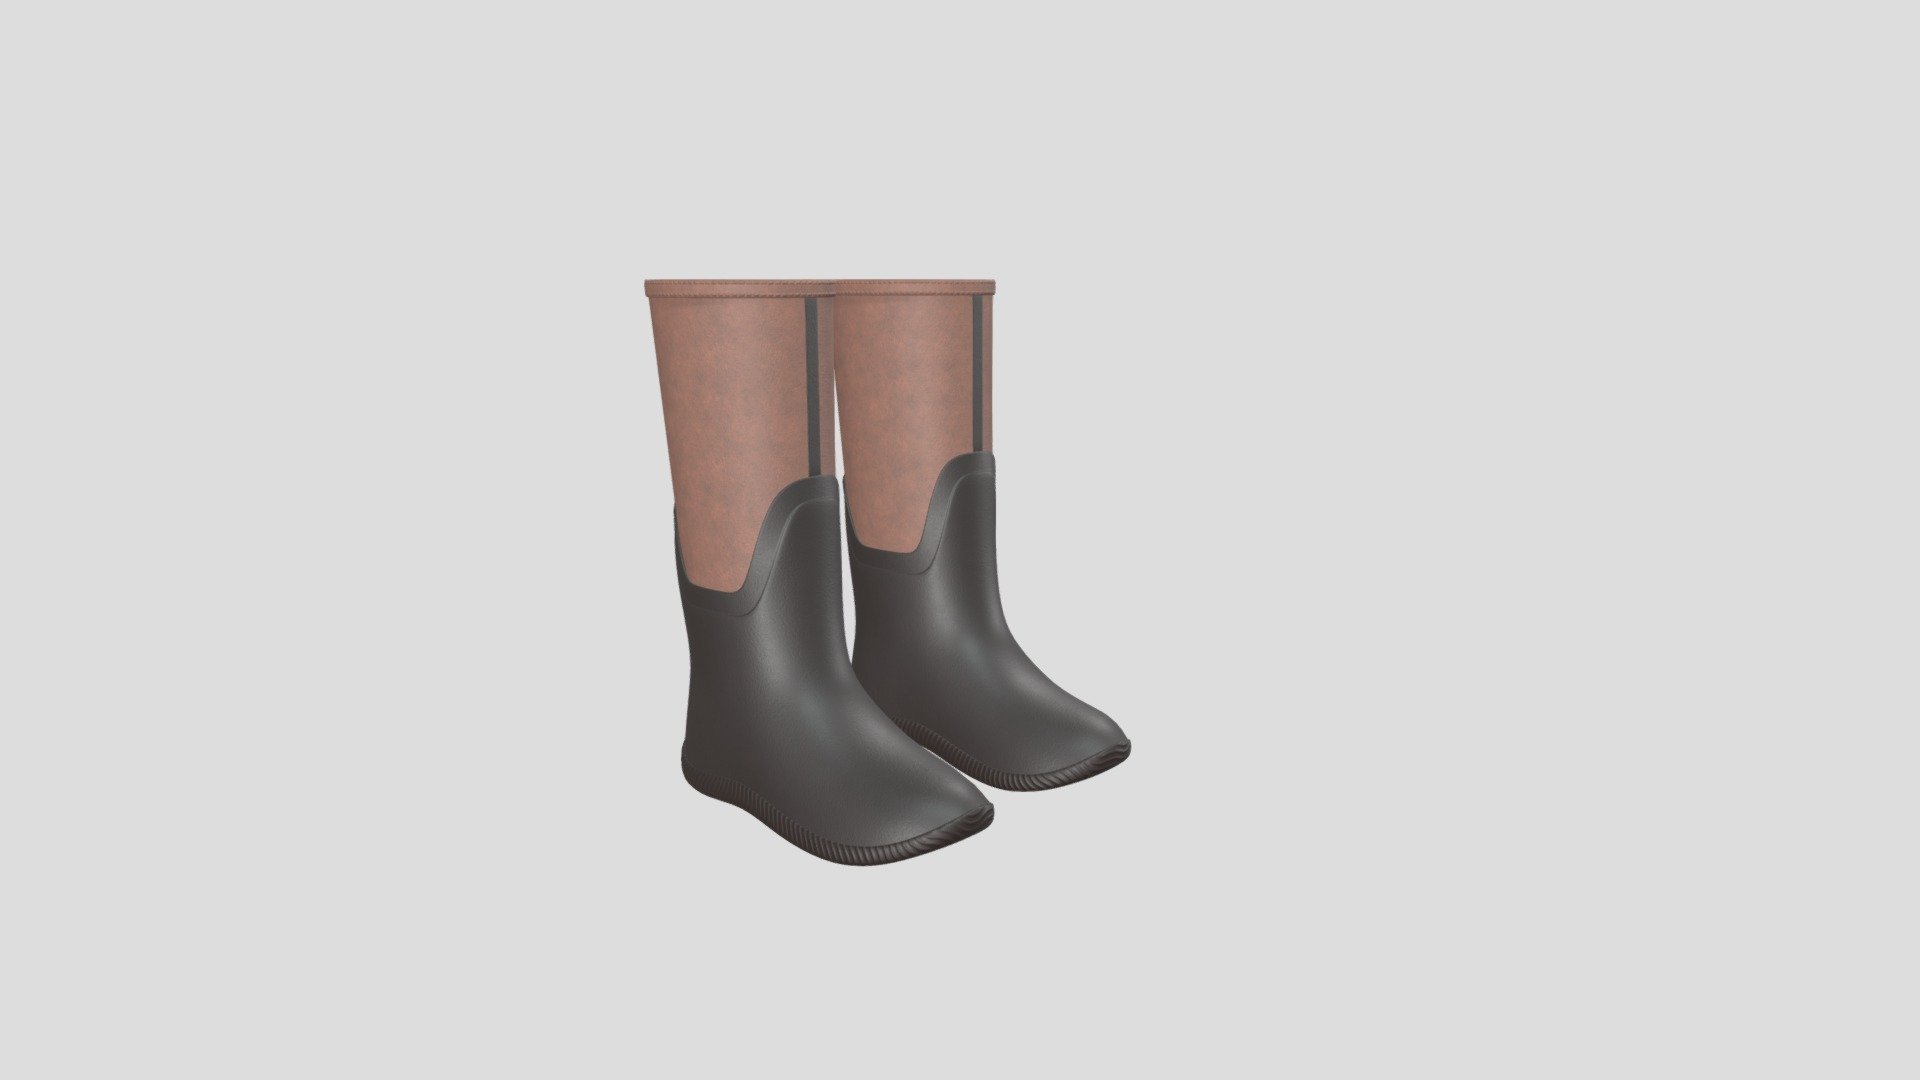 Waterproof Rubber Rain Boots - Buy Royalty Free 3D model by Chloe-Li-3D ...